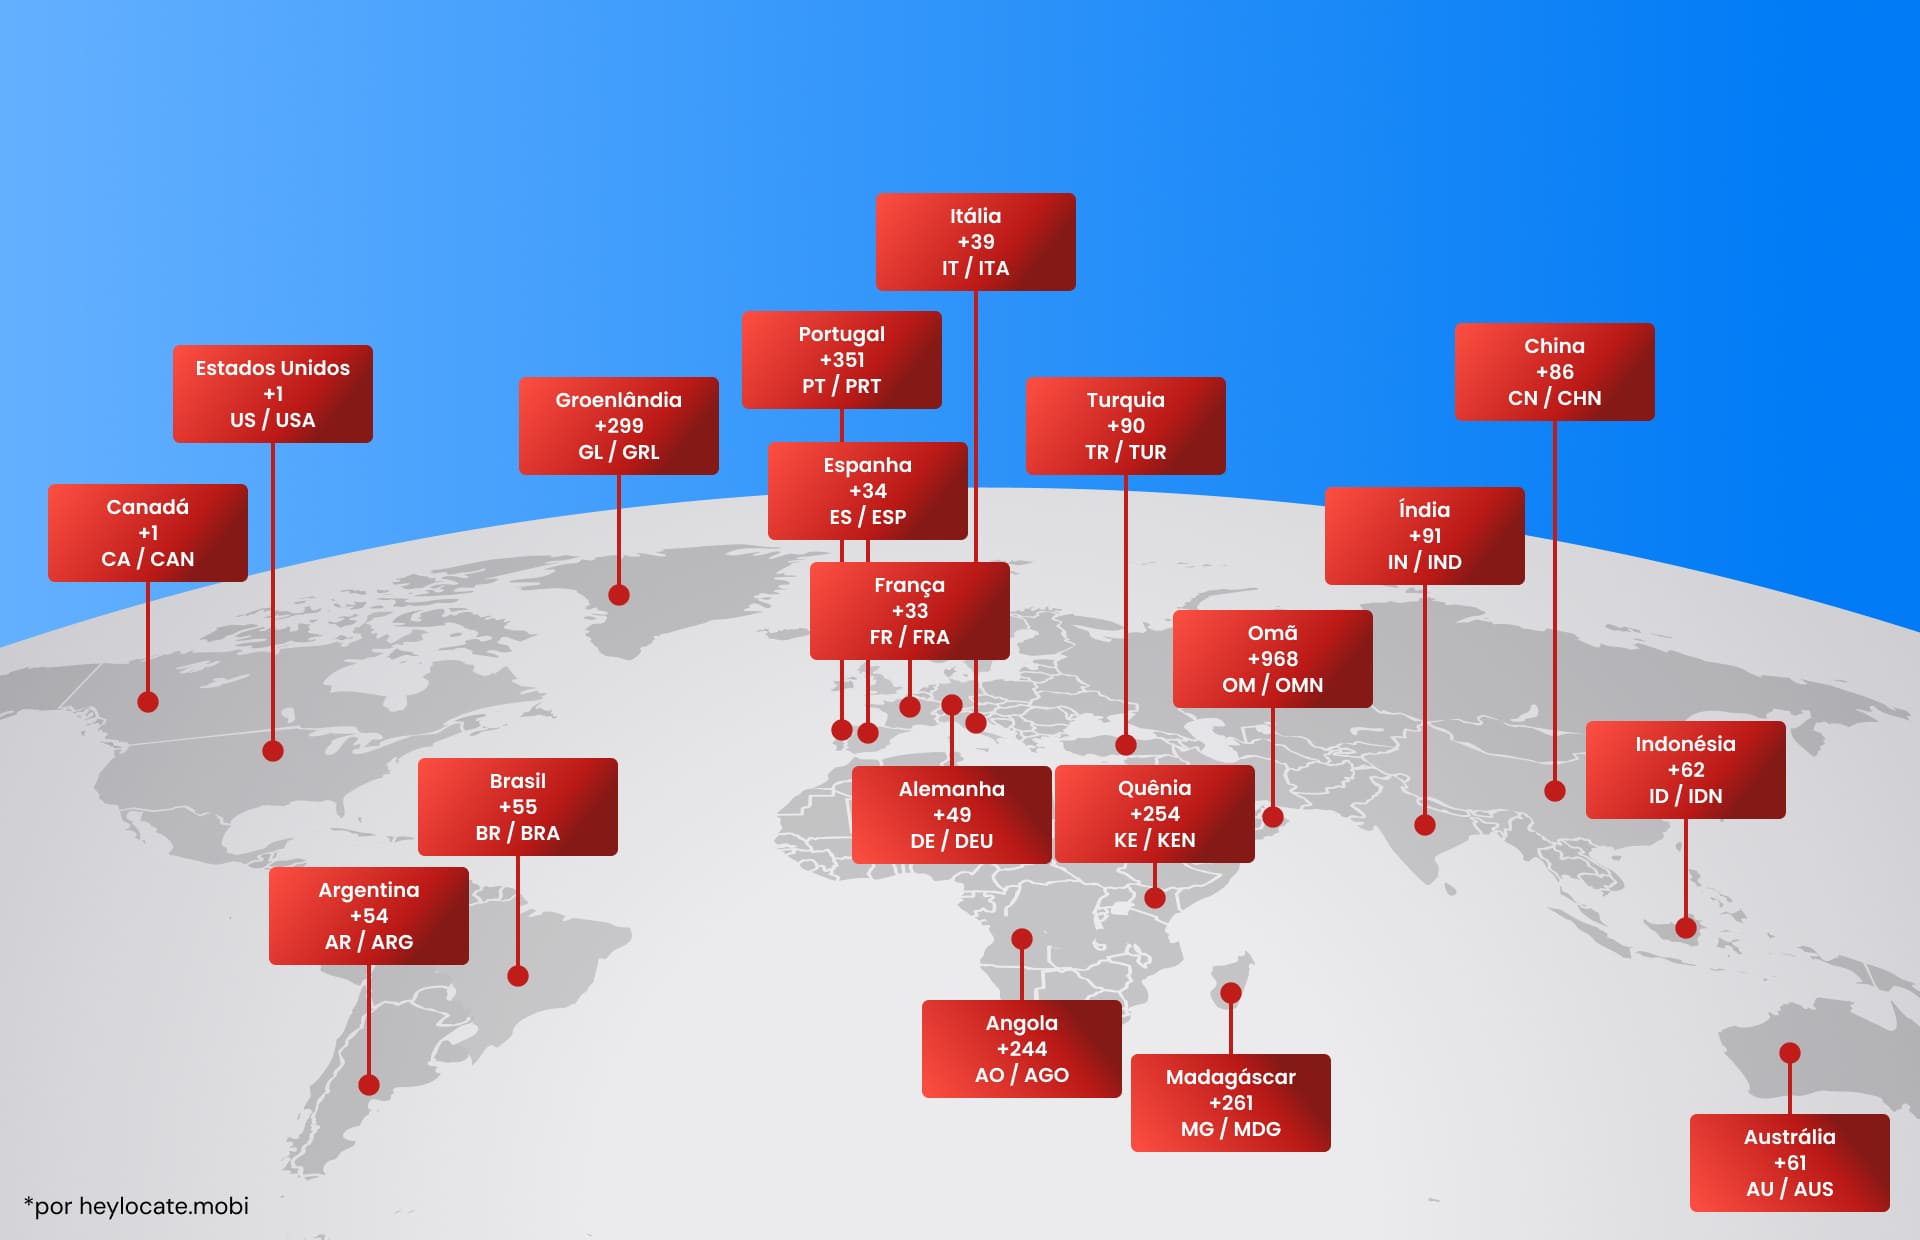 Mapa-múndi com marcações de códigos de países de vários países ilustrando o sistema global de códigos de discagem telefônica